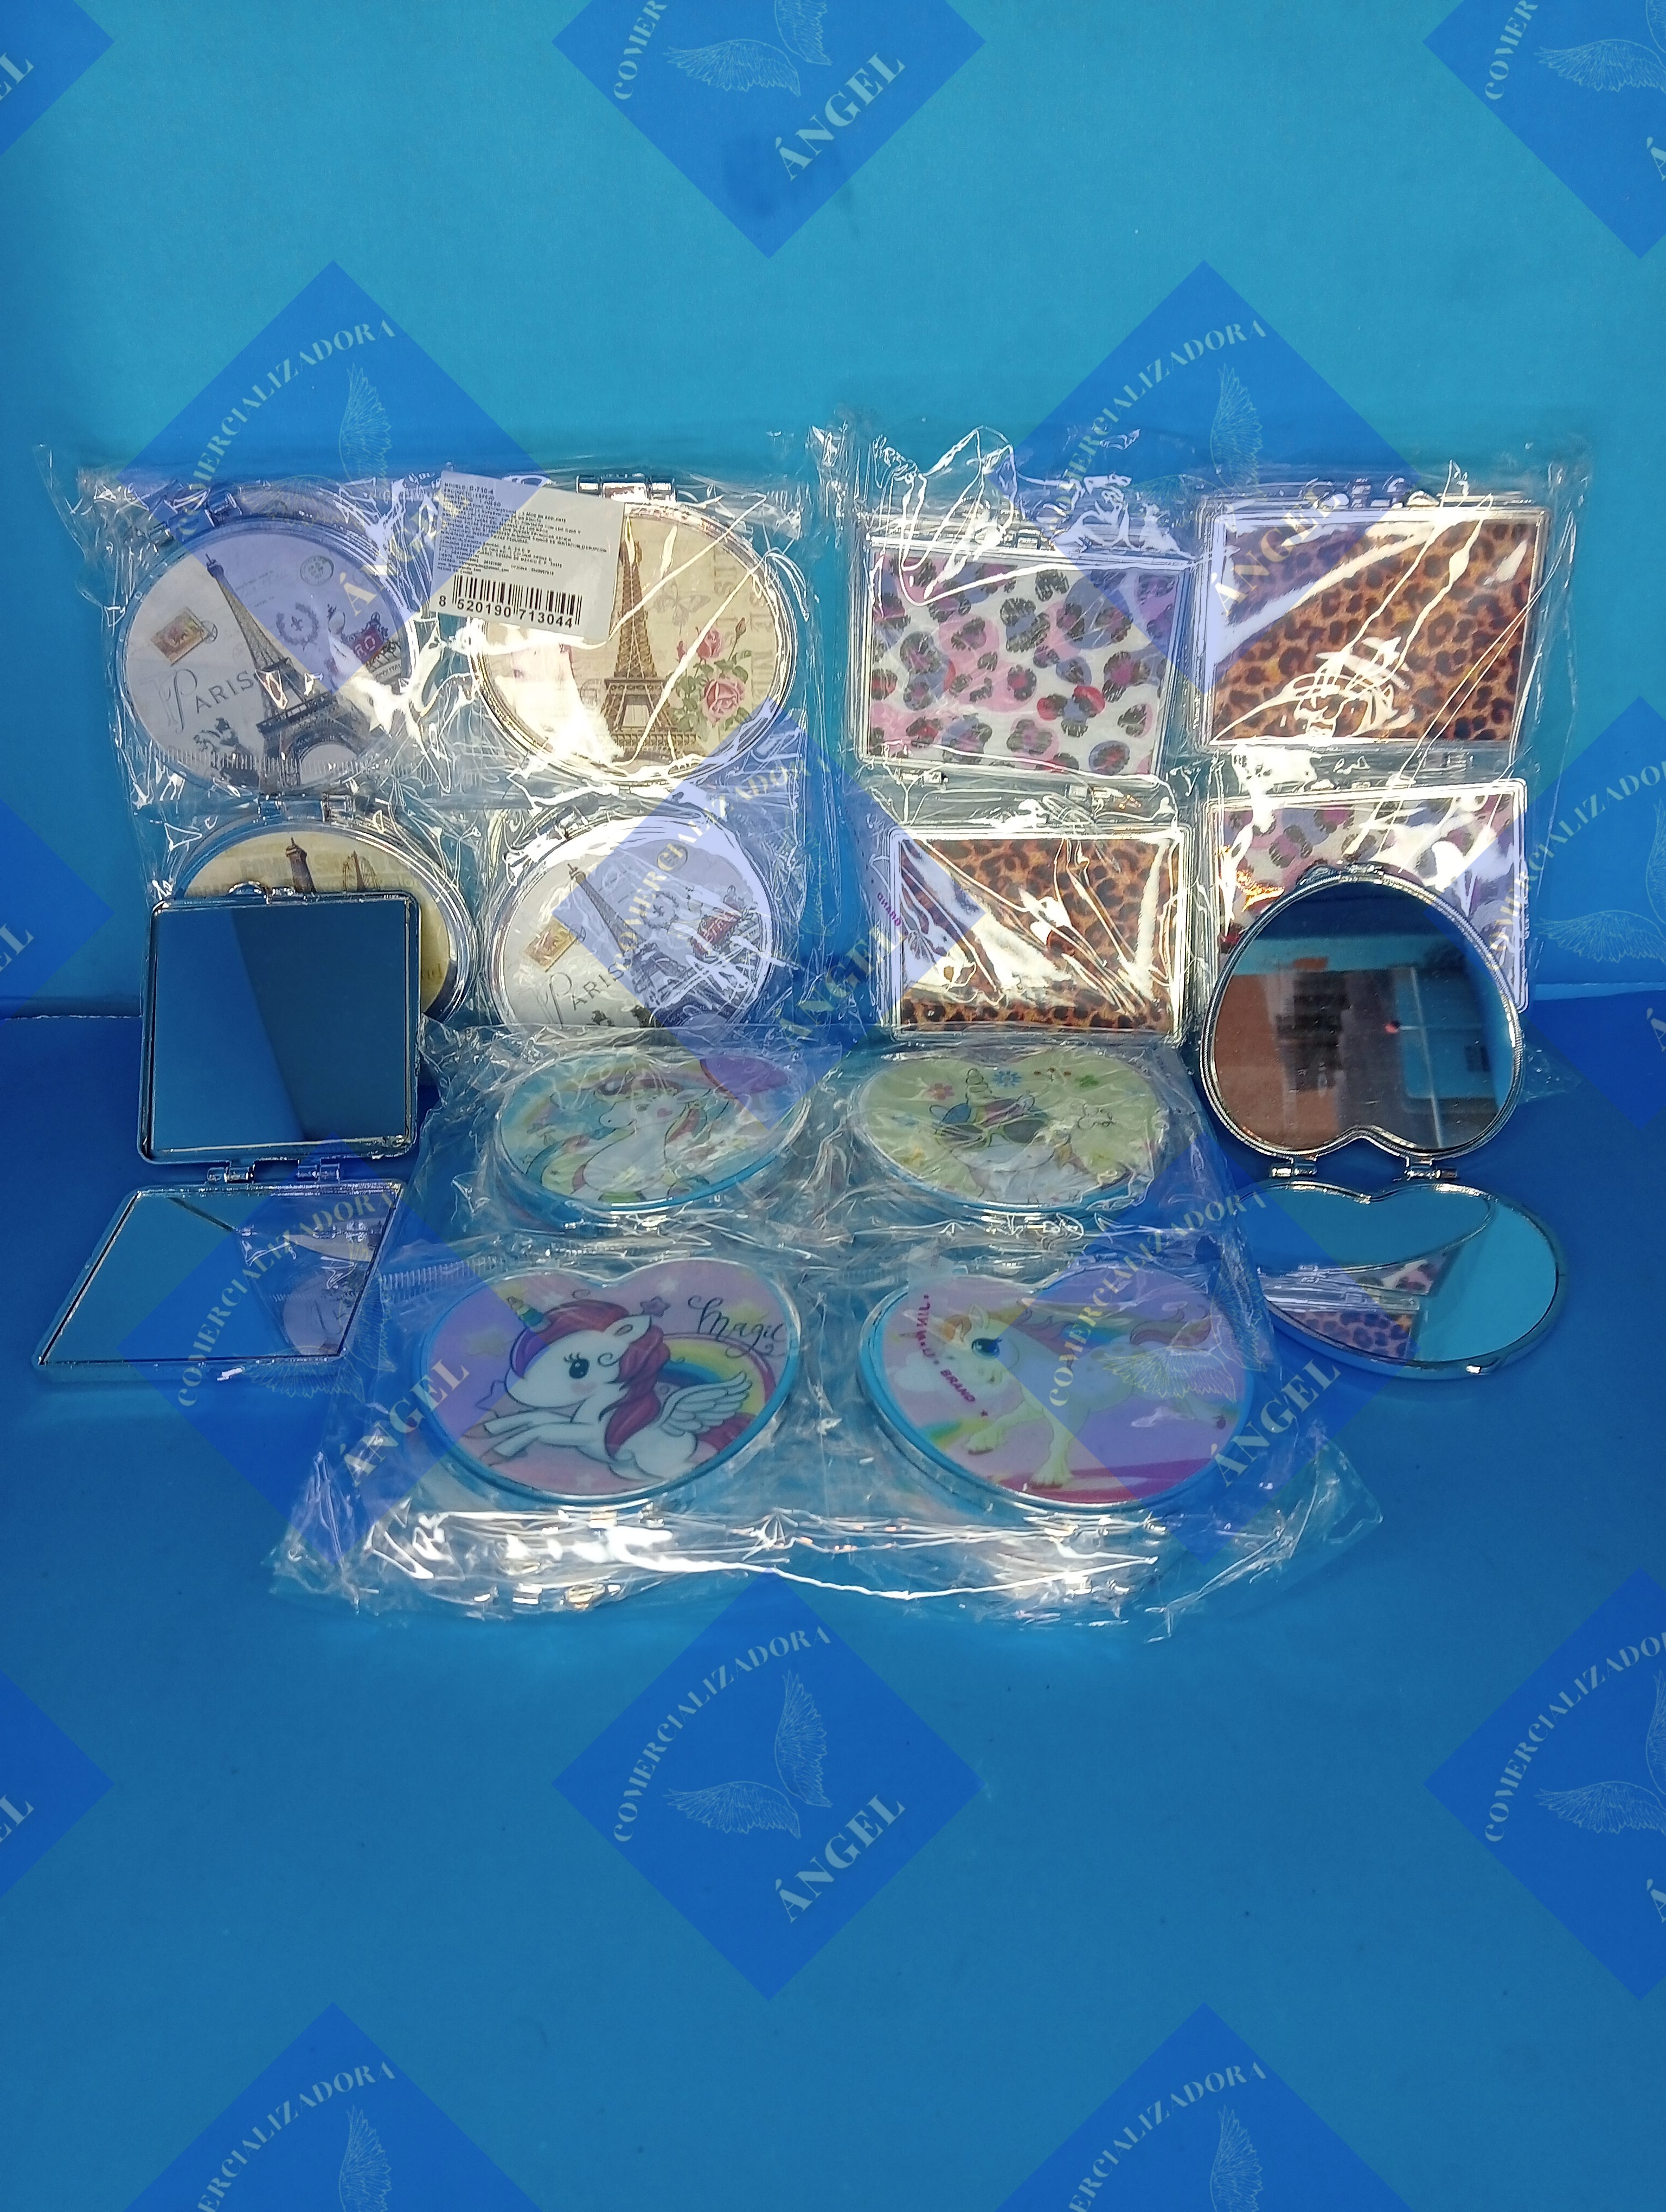 Paquete de 3 Juegos de 12 espejos (varios diseños)